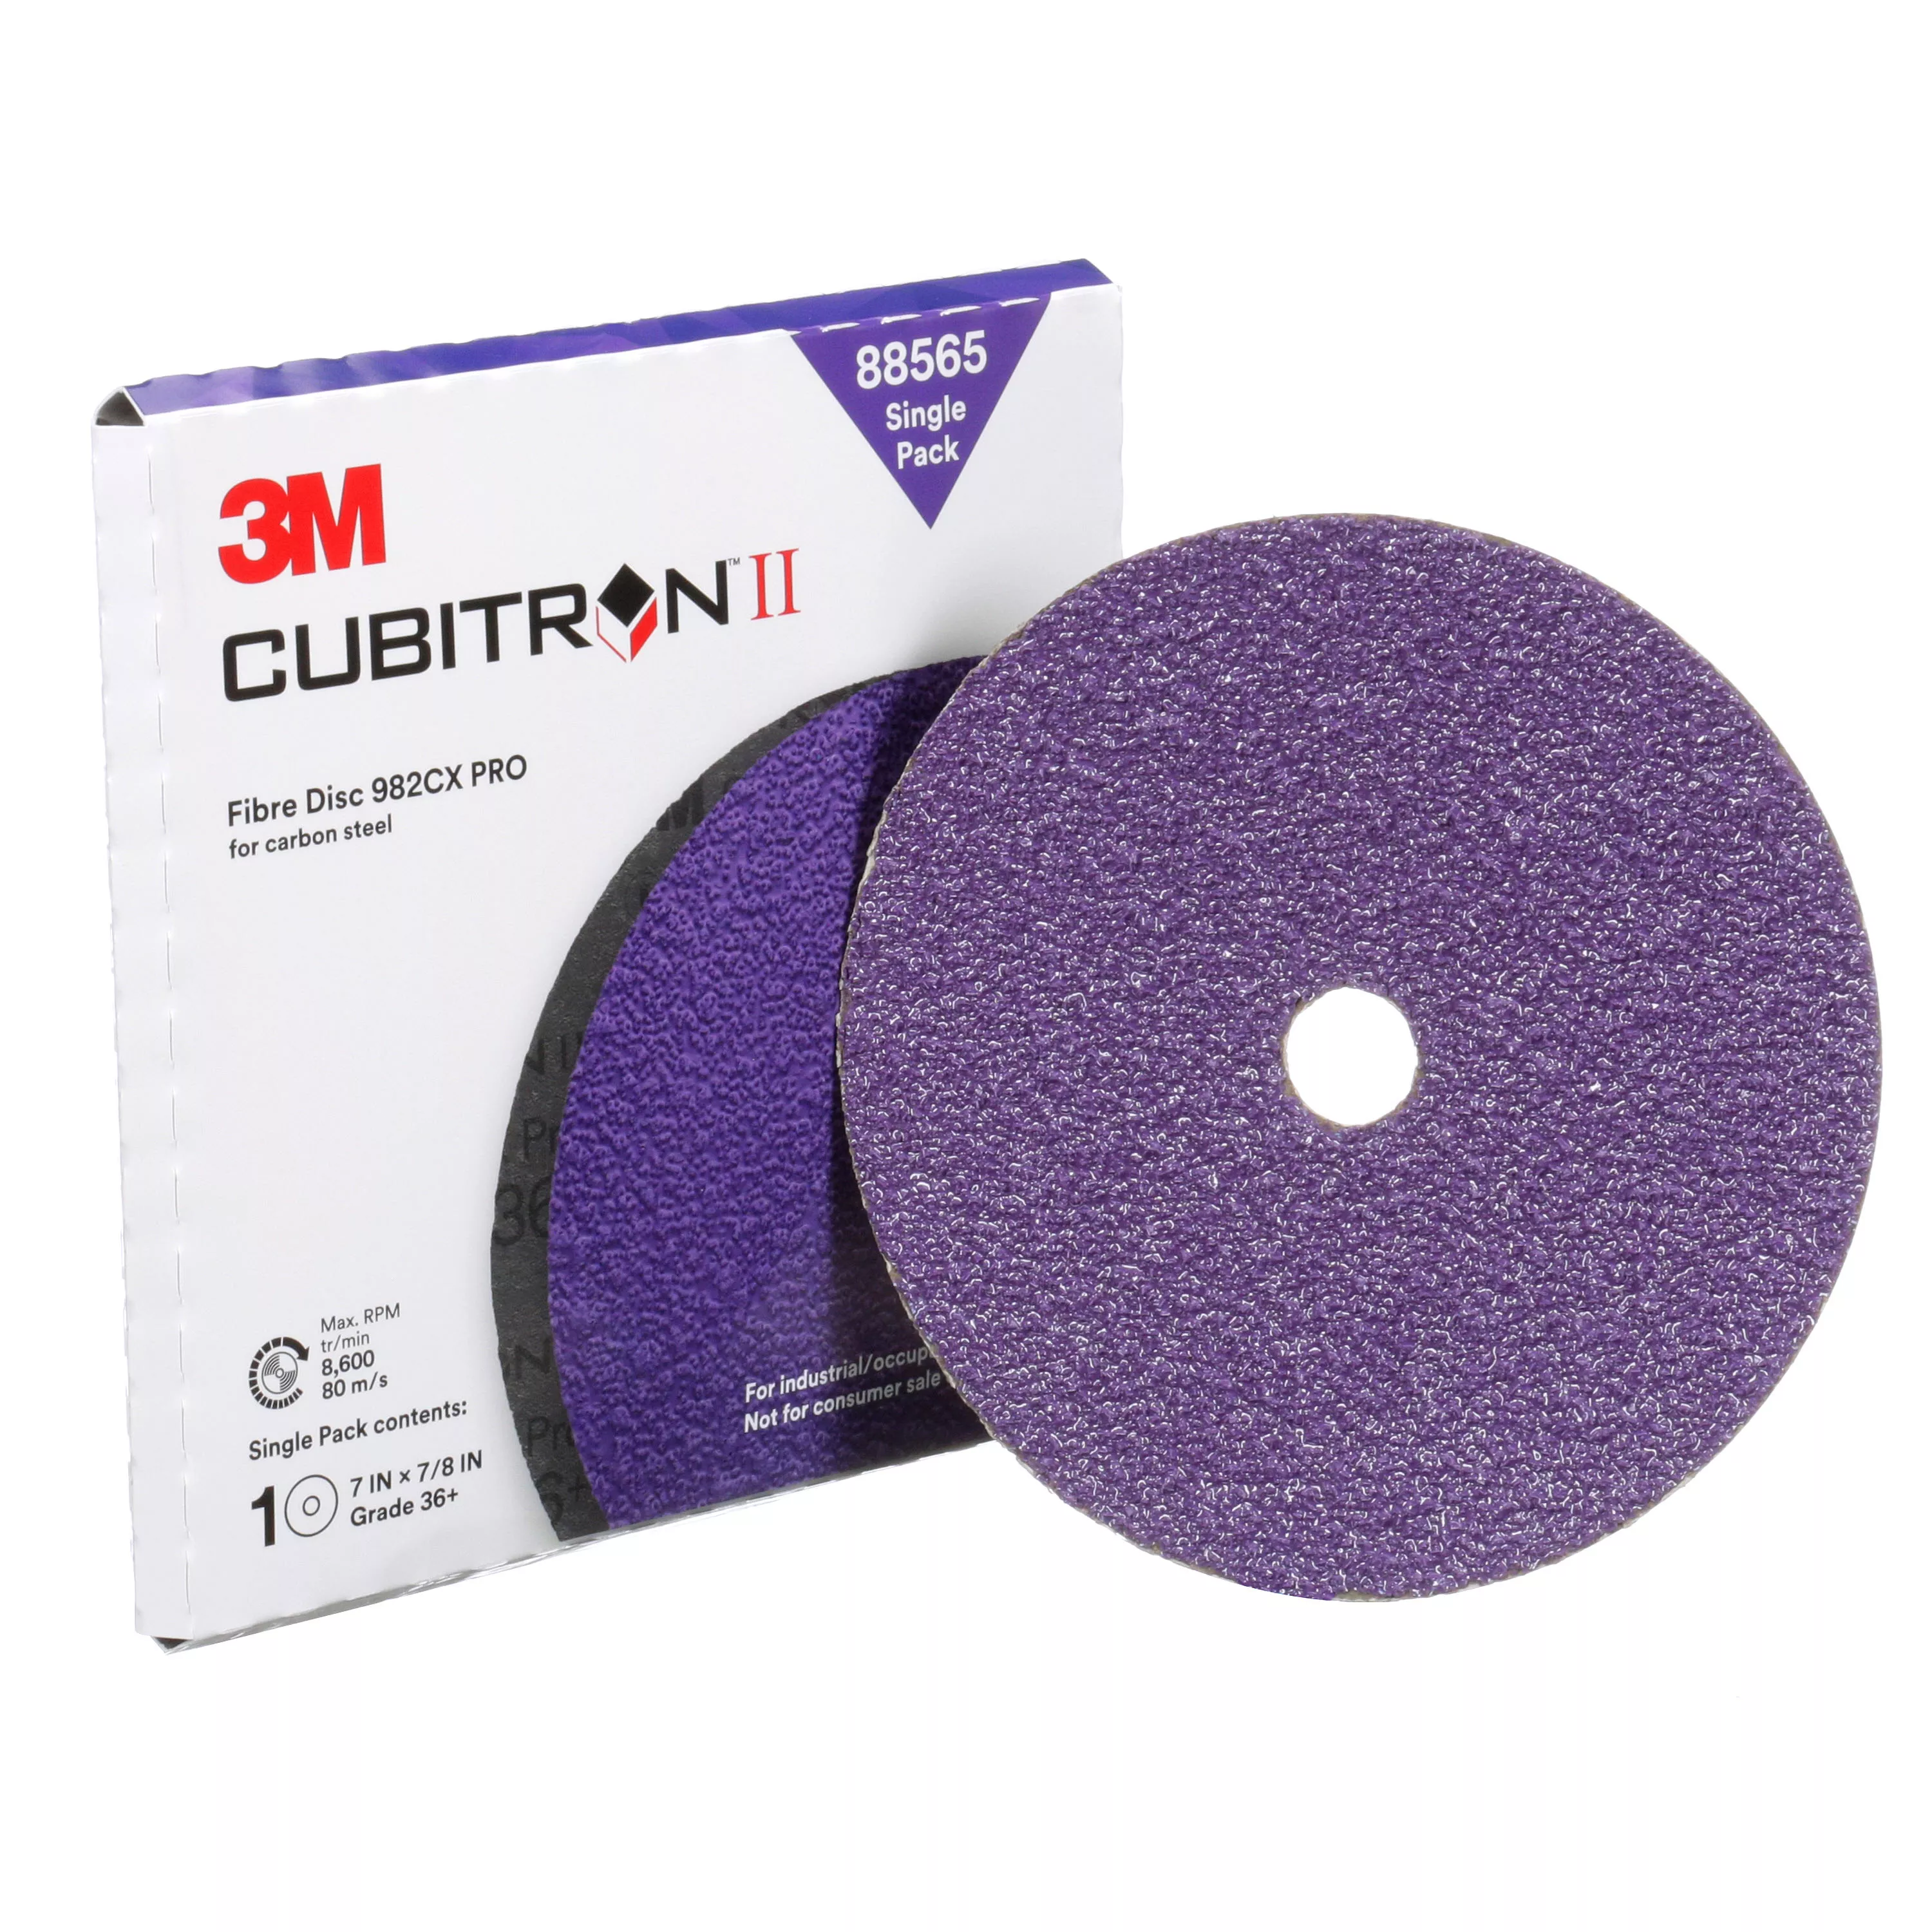 SKU 7100253451 | 3M™ Cubitron™ II Fibre Disc 982CX Pro